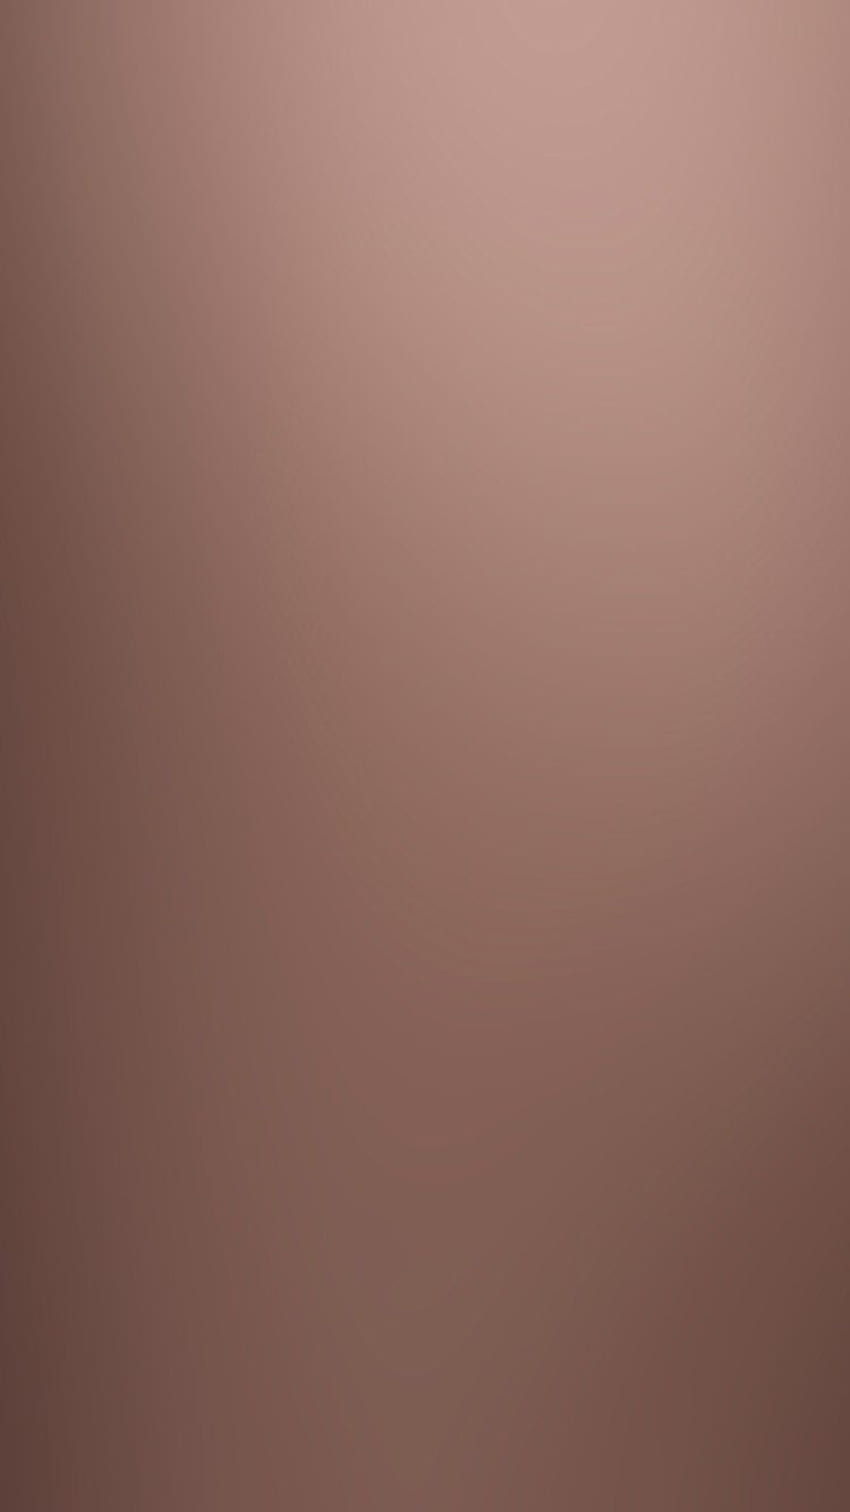 iPhone . brown beige rose gold gradasi buram, Rose Gold 5 wallpaper ponsel HD